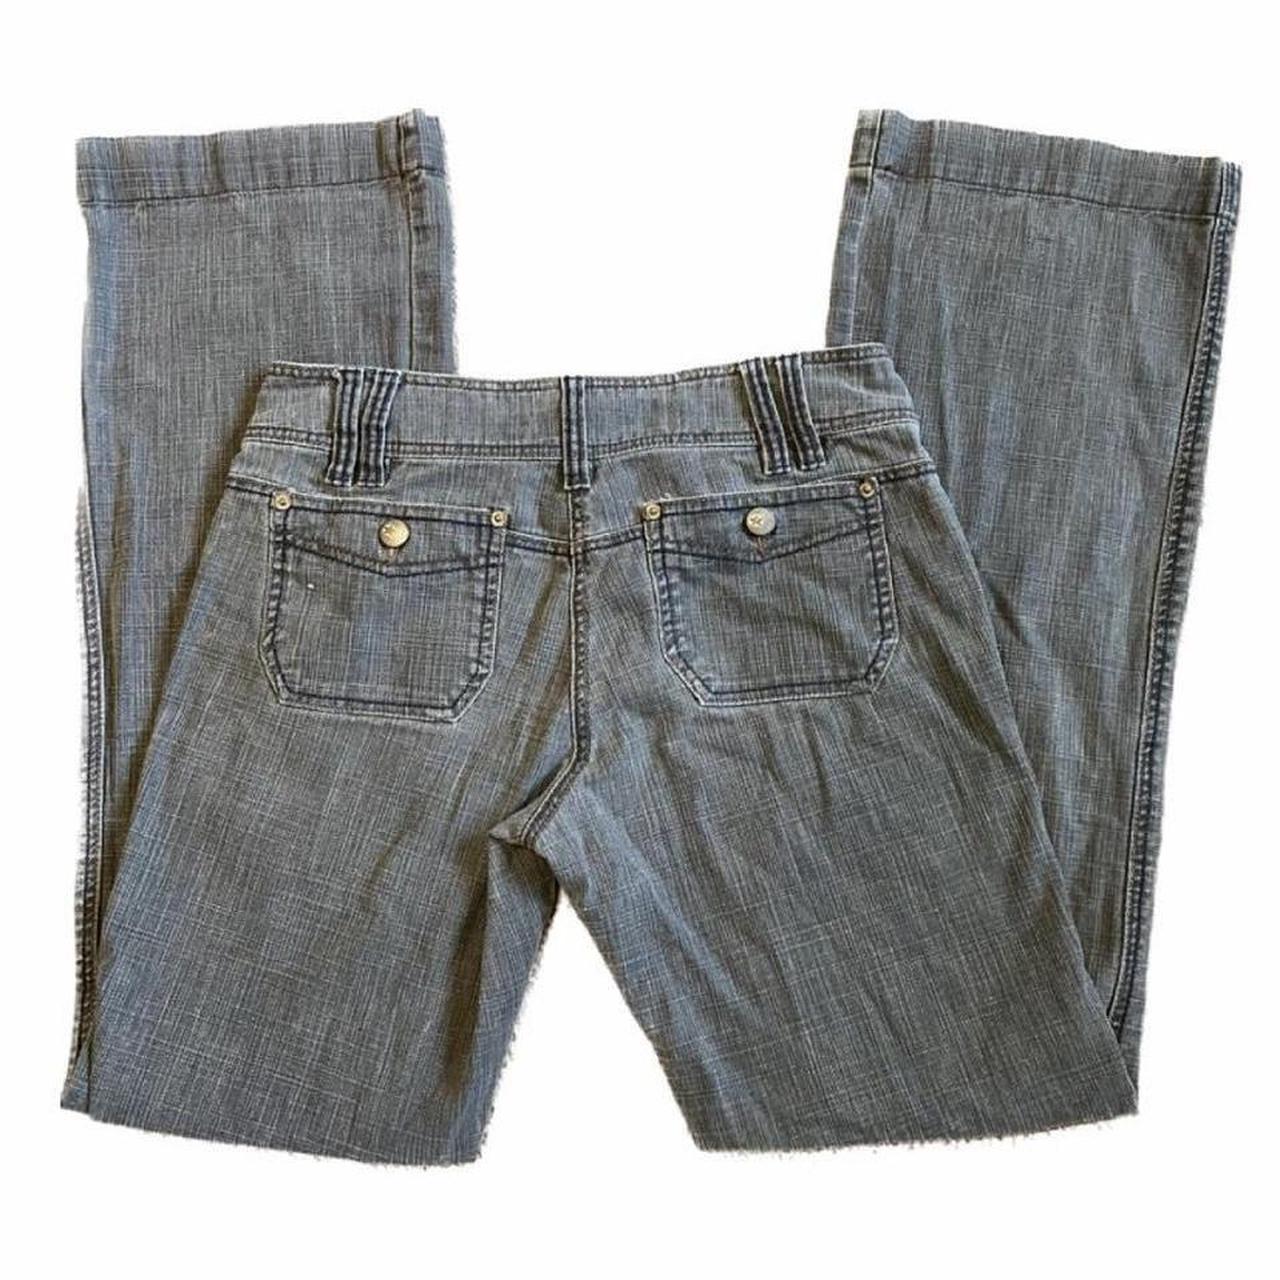 Light Grey bootcut jeans star buttons, pocket... - Depop